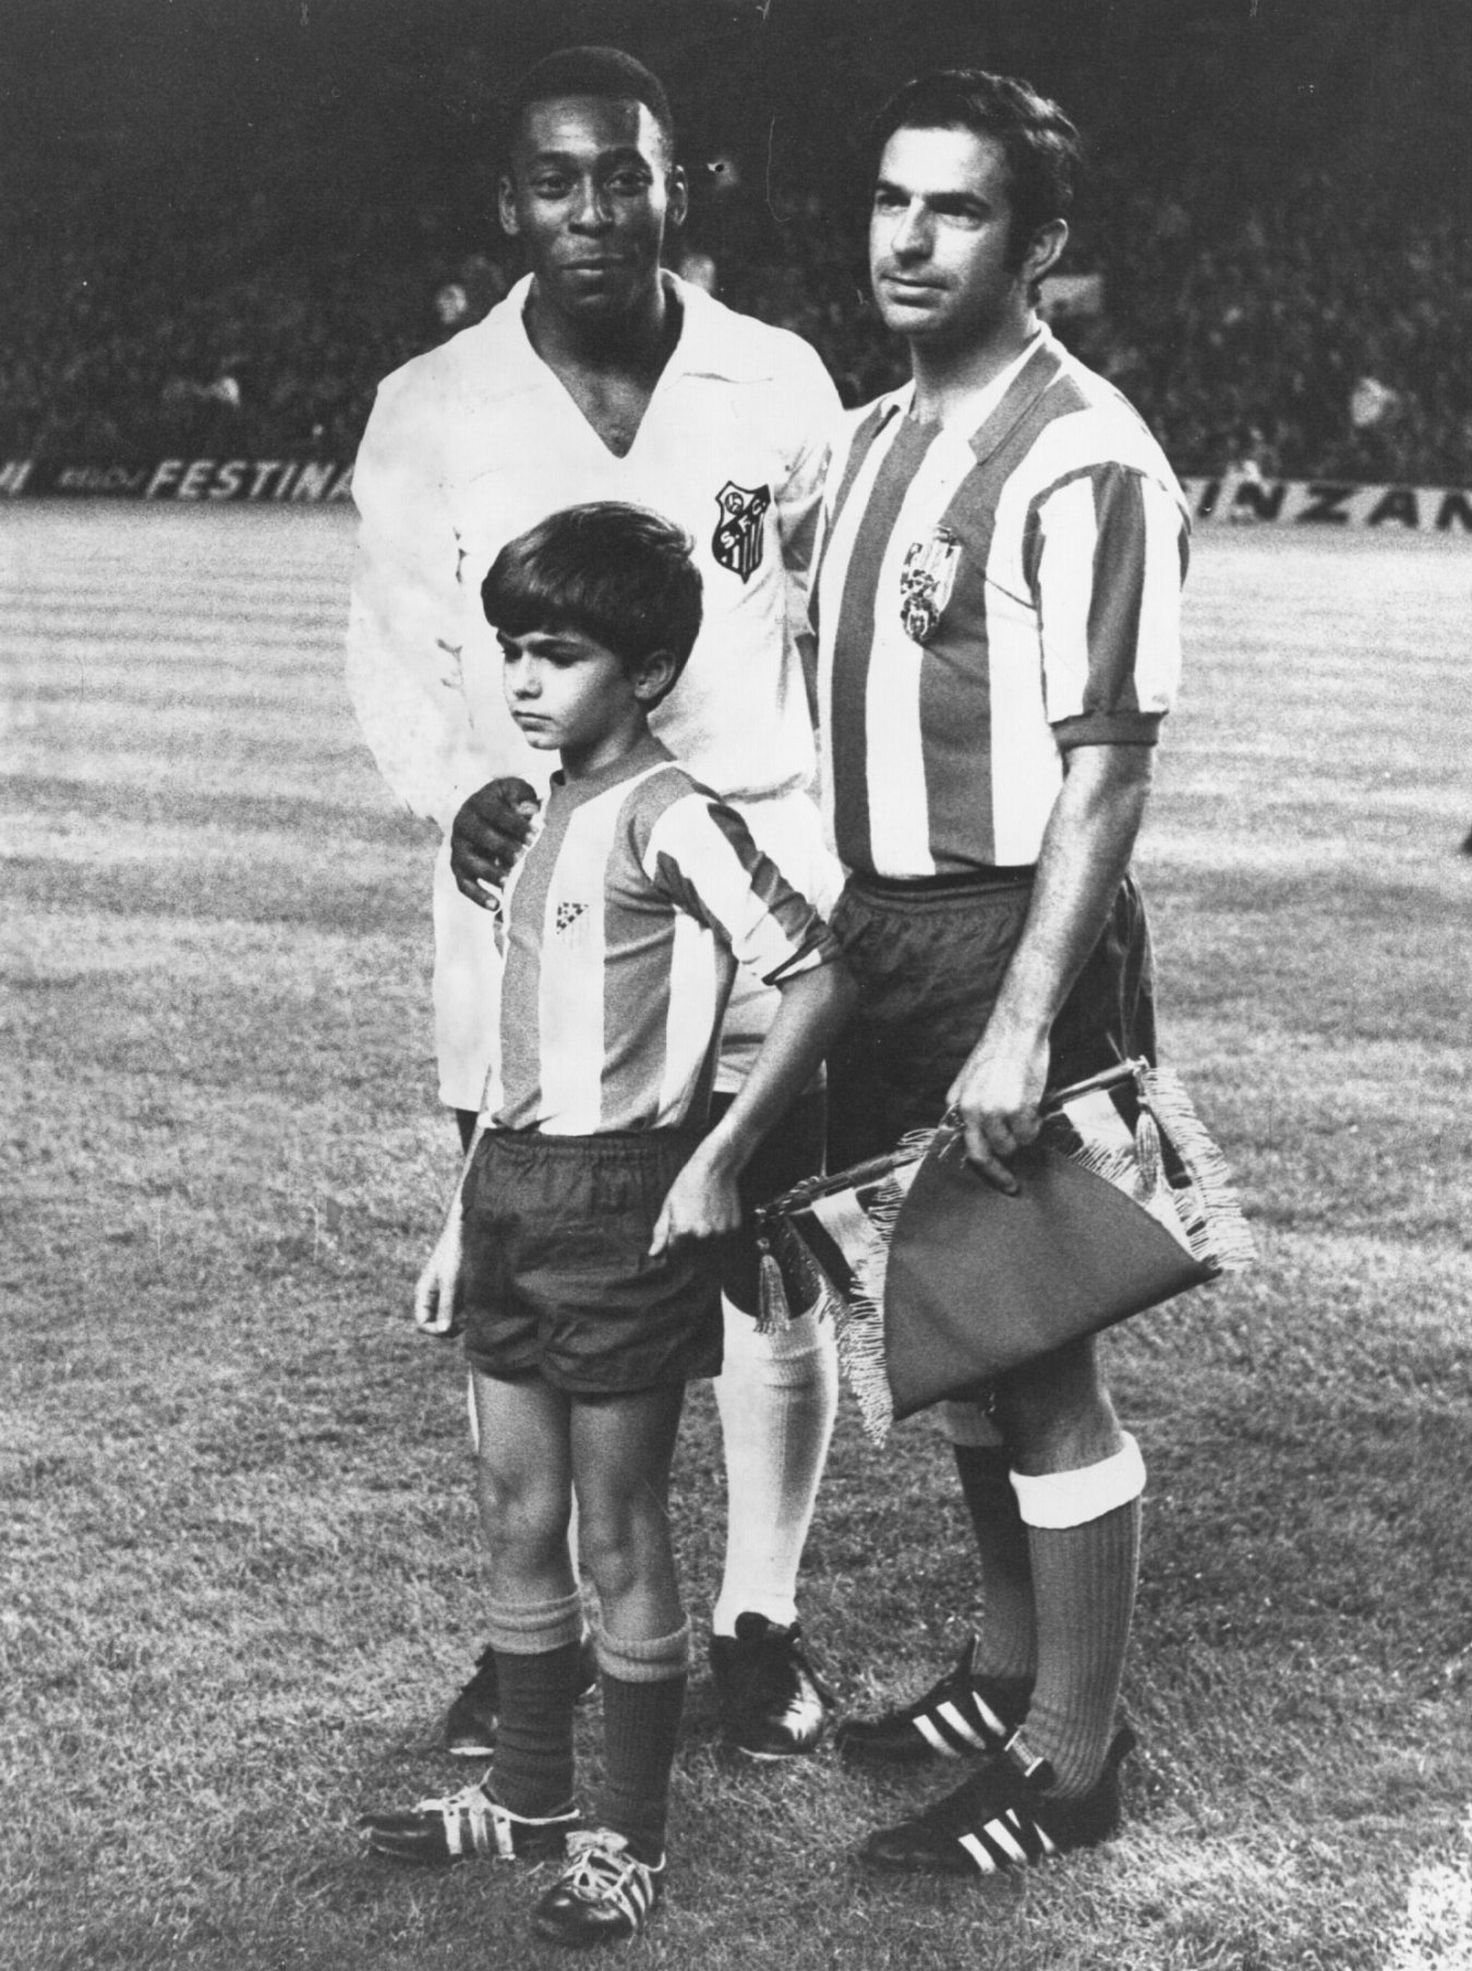  17 سبتمبر 1969 تكريمًا قدمه نادي روجيبلانكو لفيليسيانو ريفيلا 